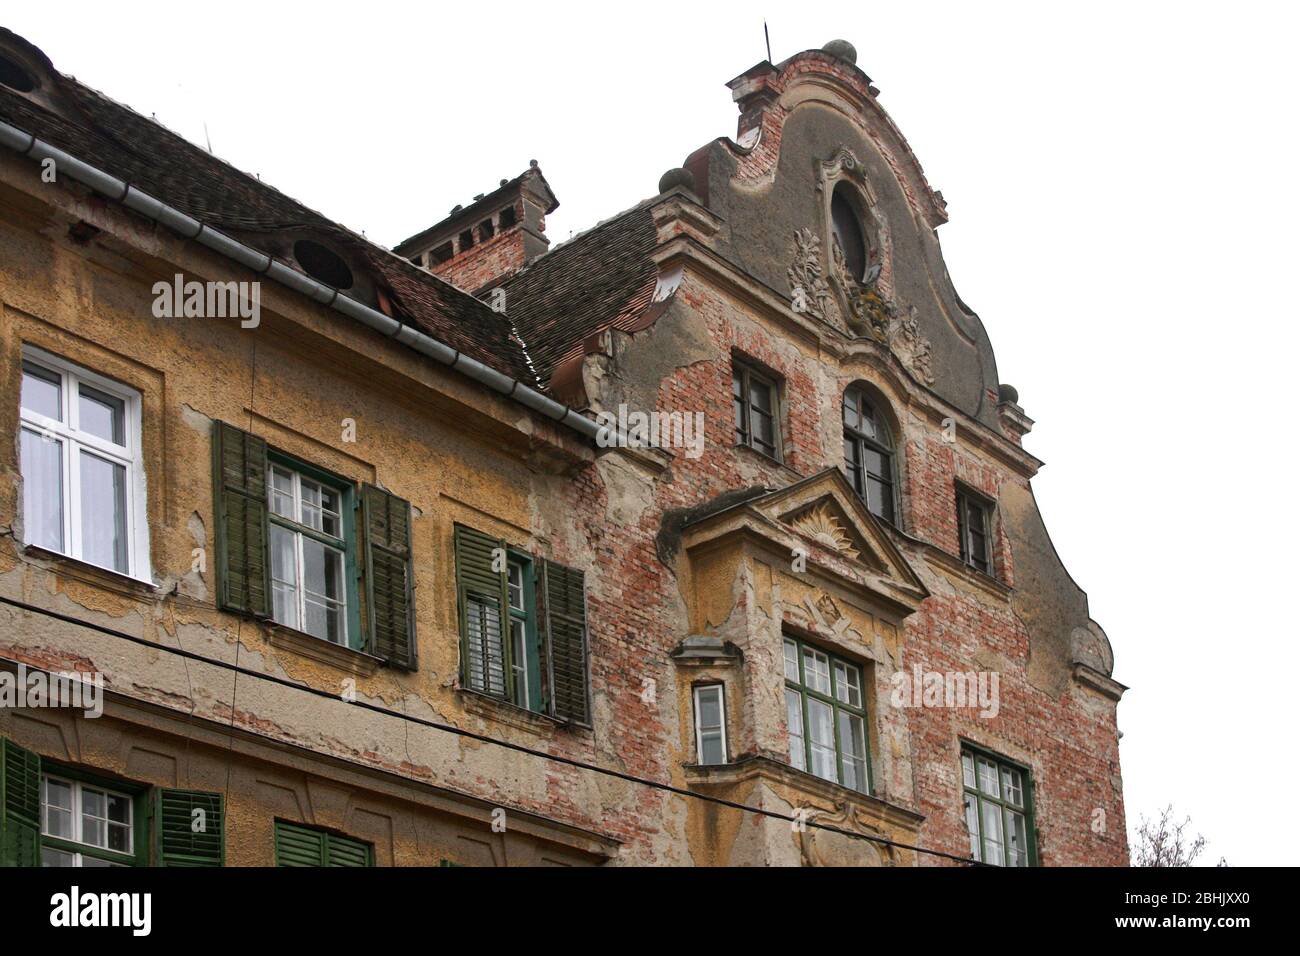 Sibiu, Roumanie. Maison massive 1900 construite sur quatre constructions anciennes plus petites. Façade en brique avec de nombreux ornements architecturaux. Banque D'Images